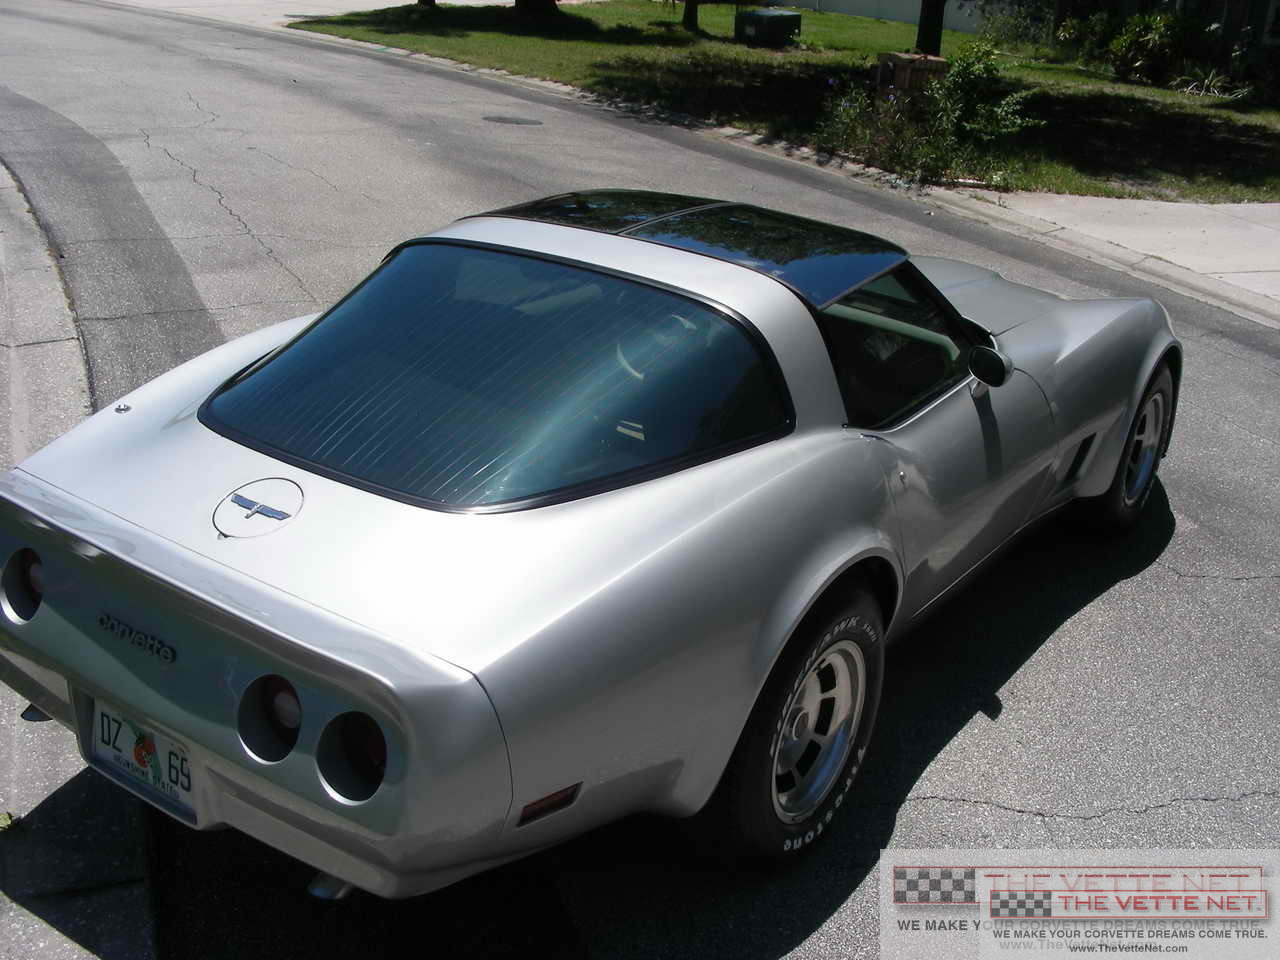 1980 Corvette T-Top Silver